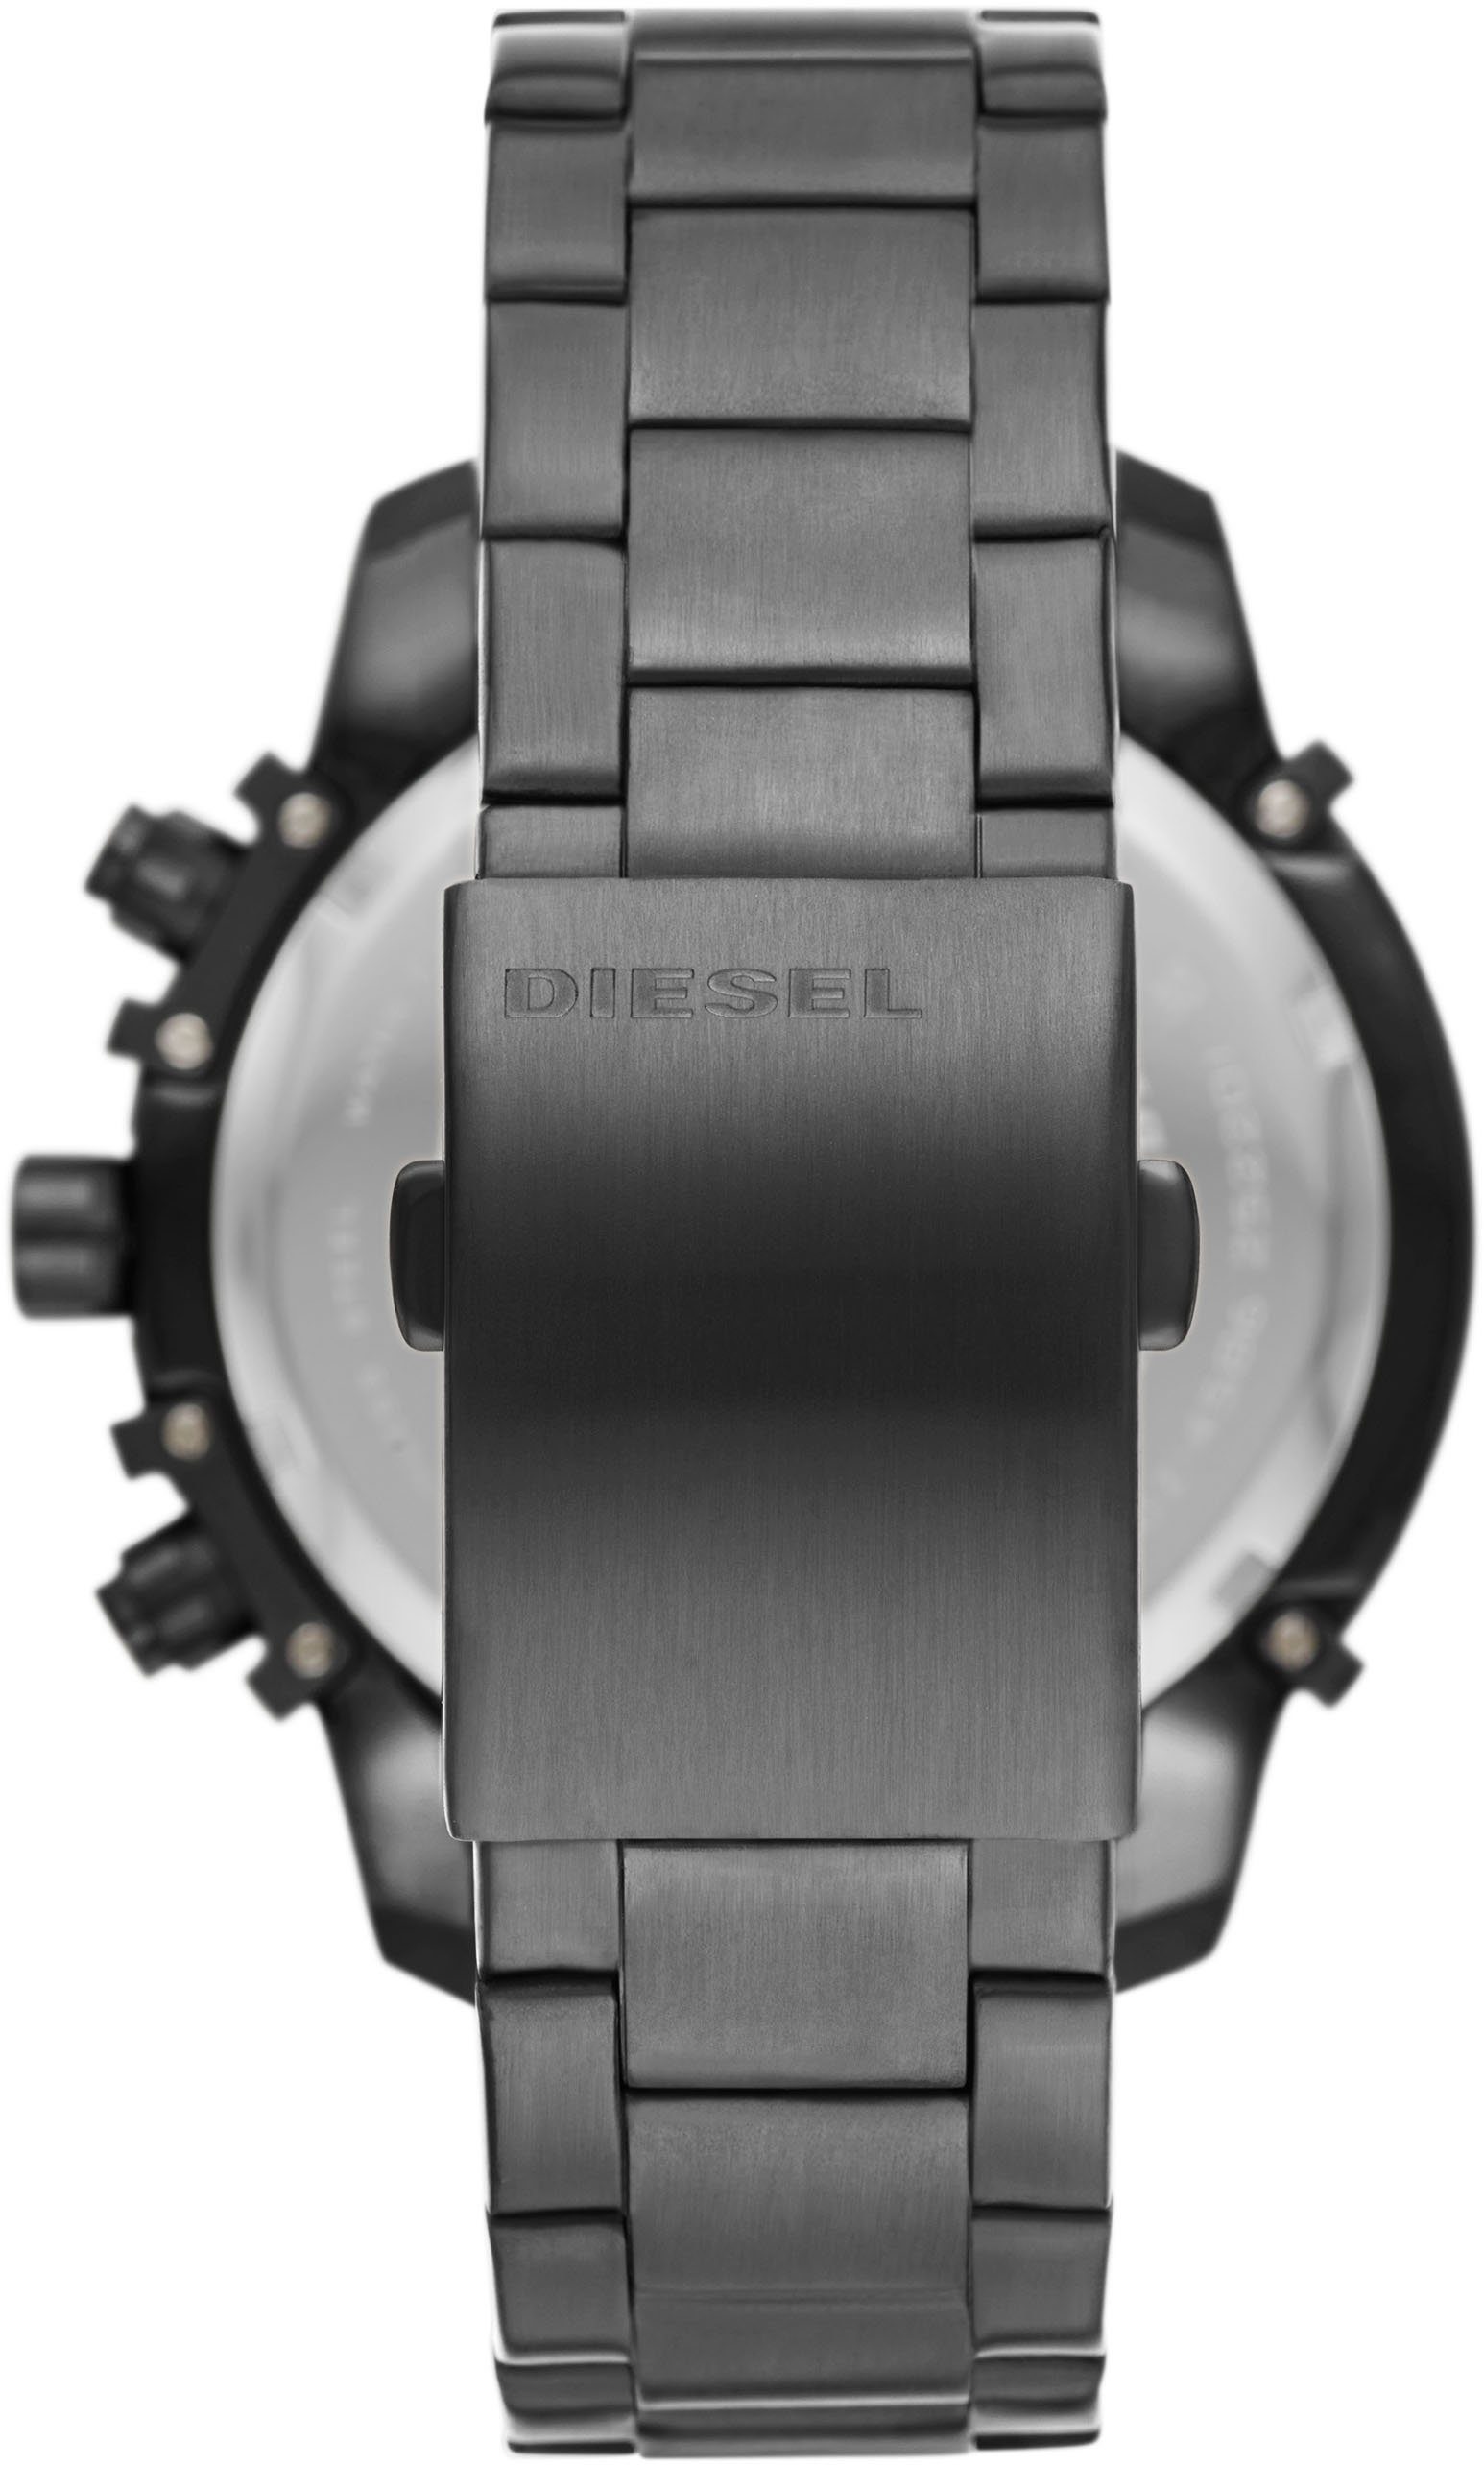 DZ4586 GRIFFED, Chronograph Diesel